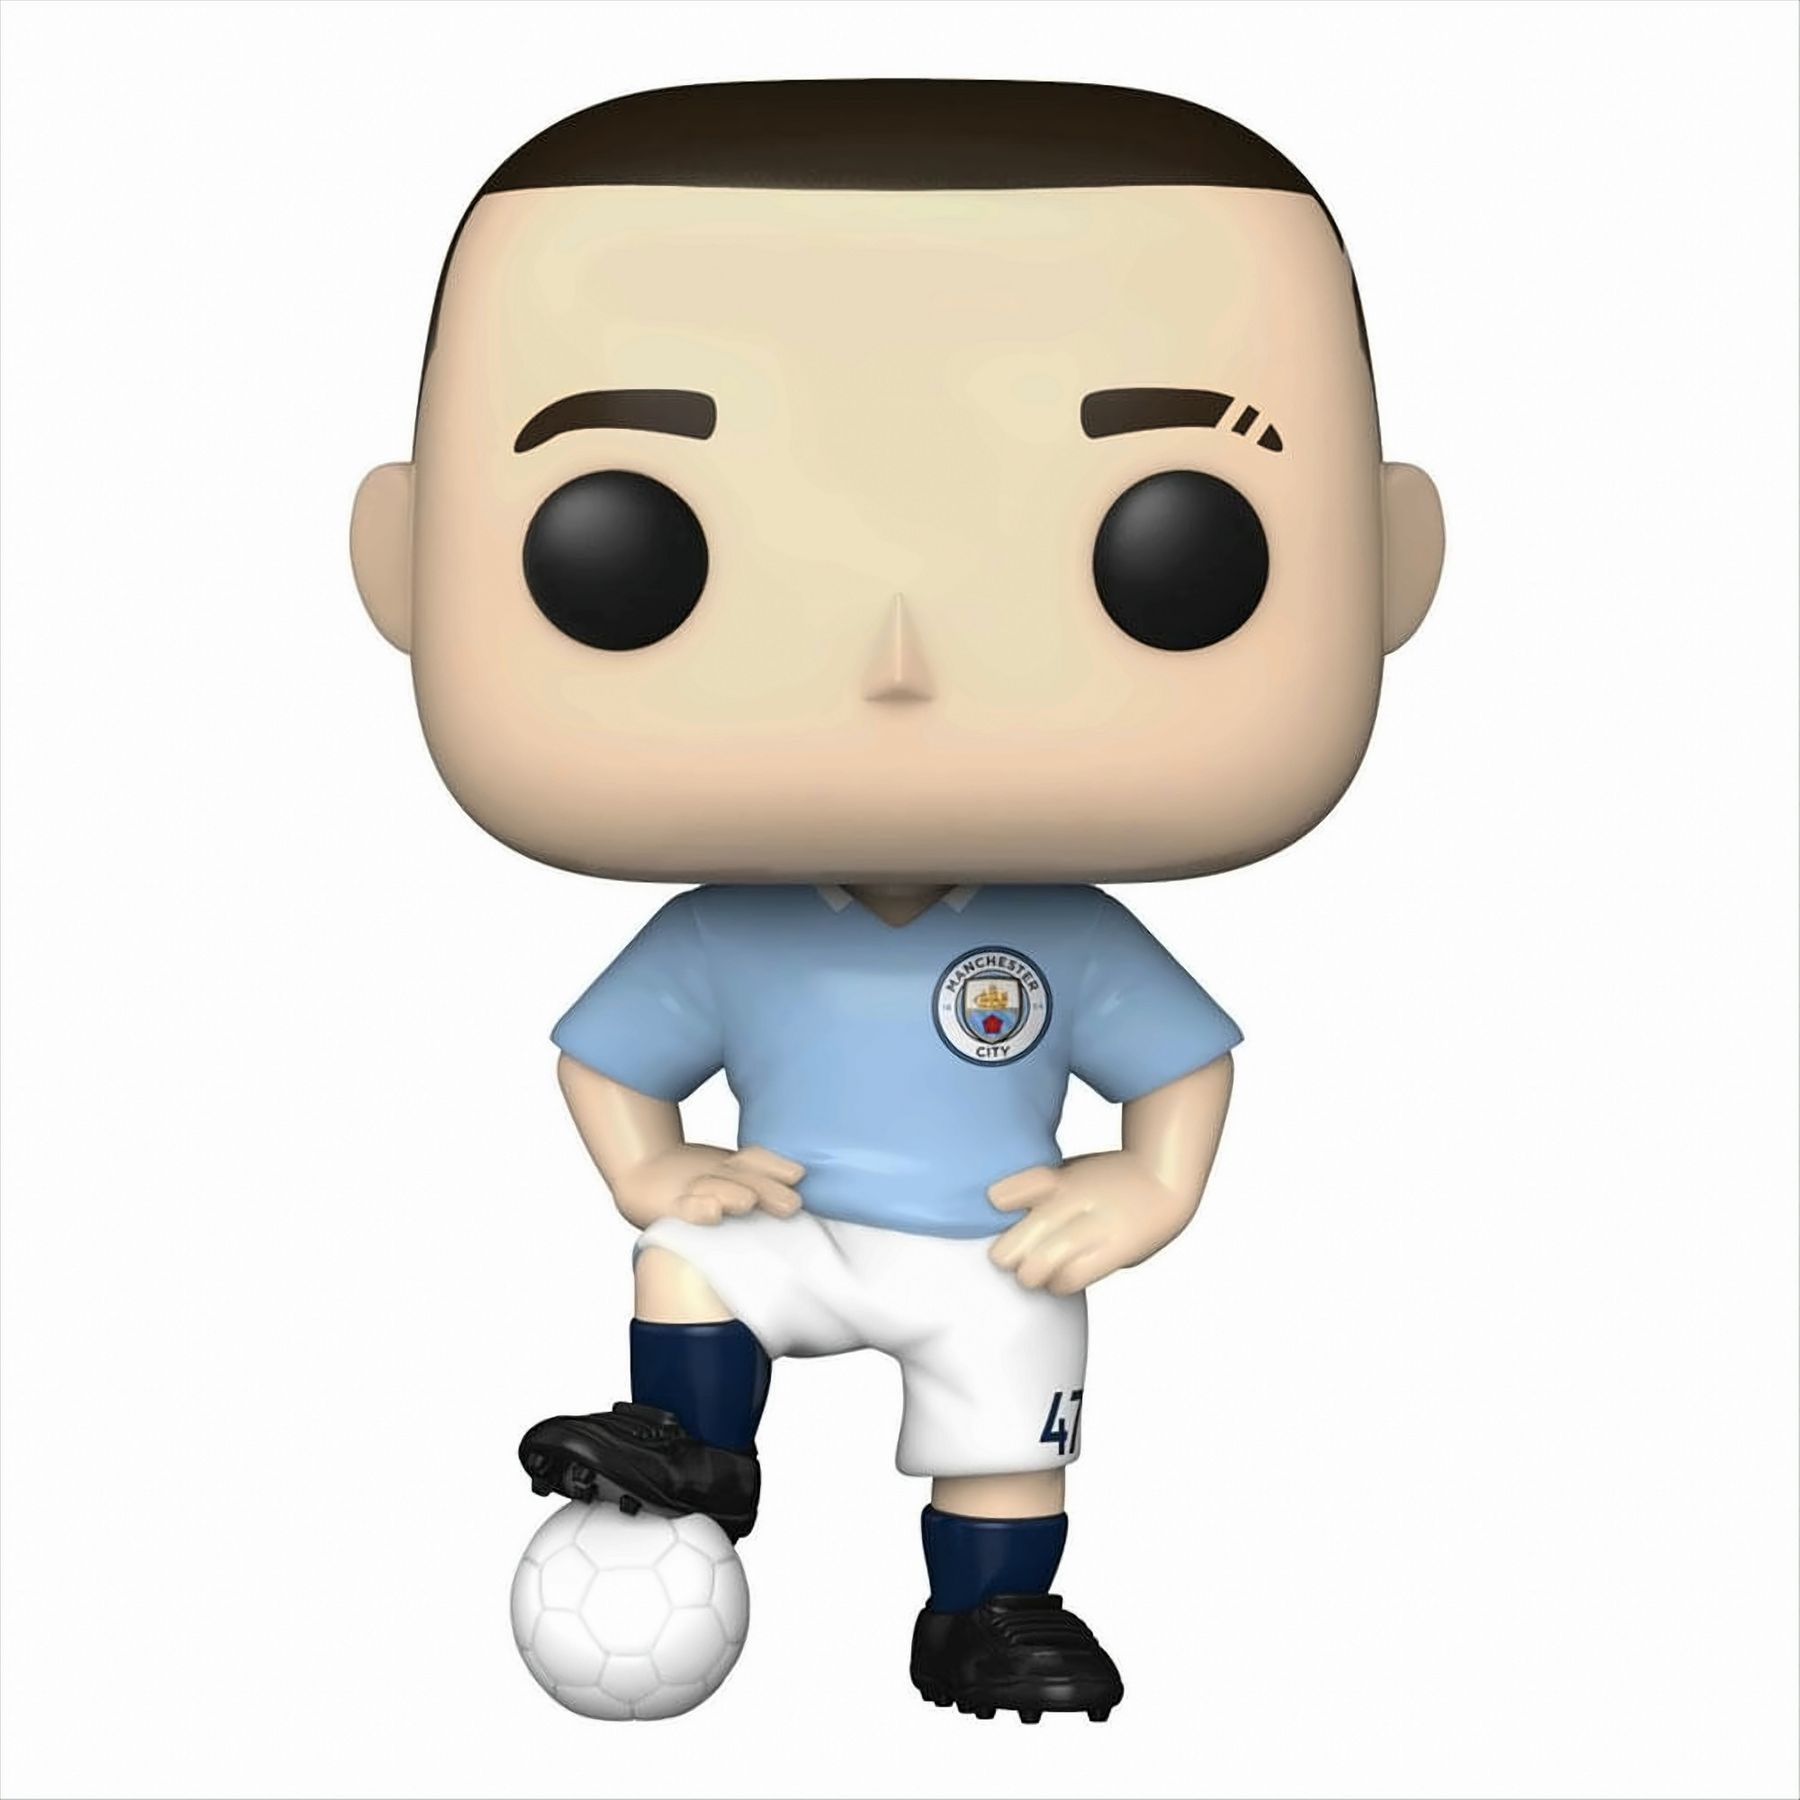 POP - Fussball - Manchester City Foden Phil 